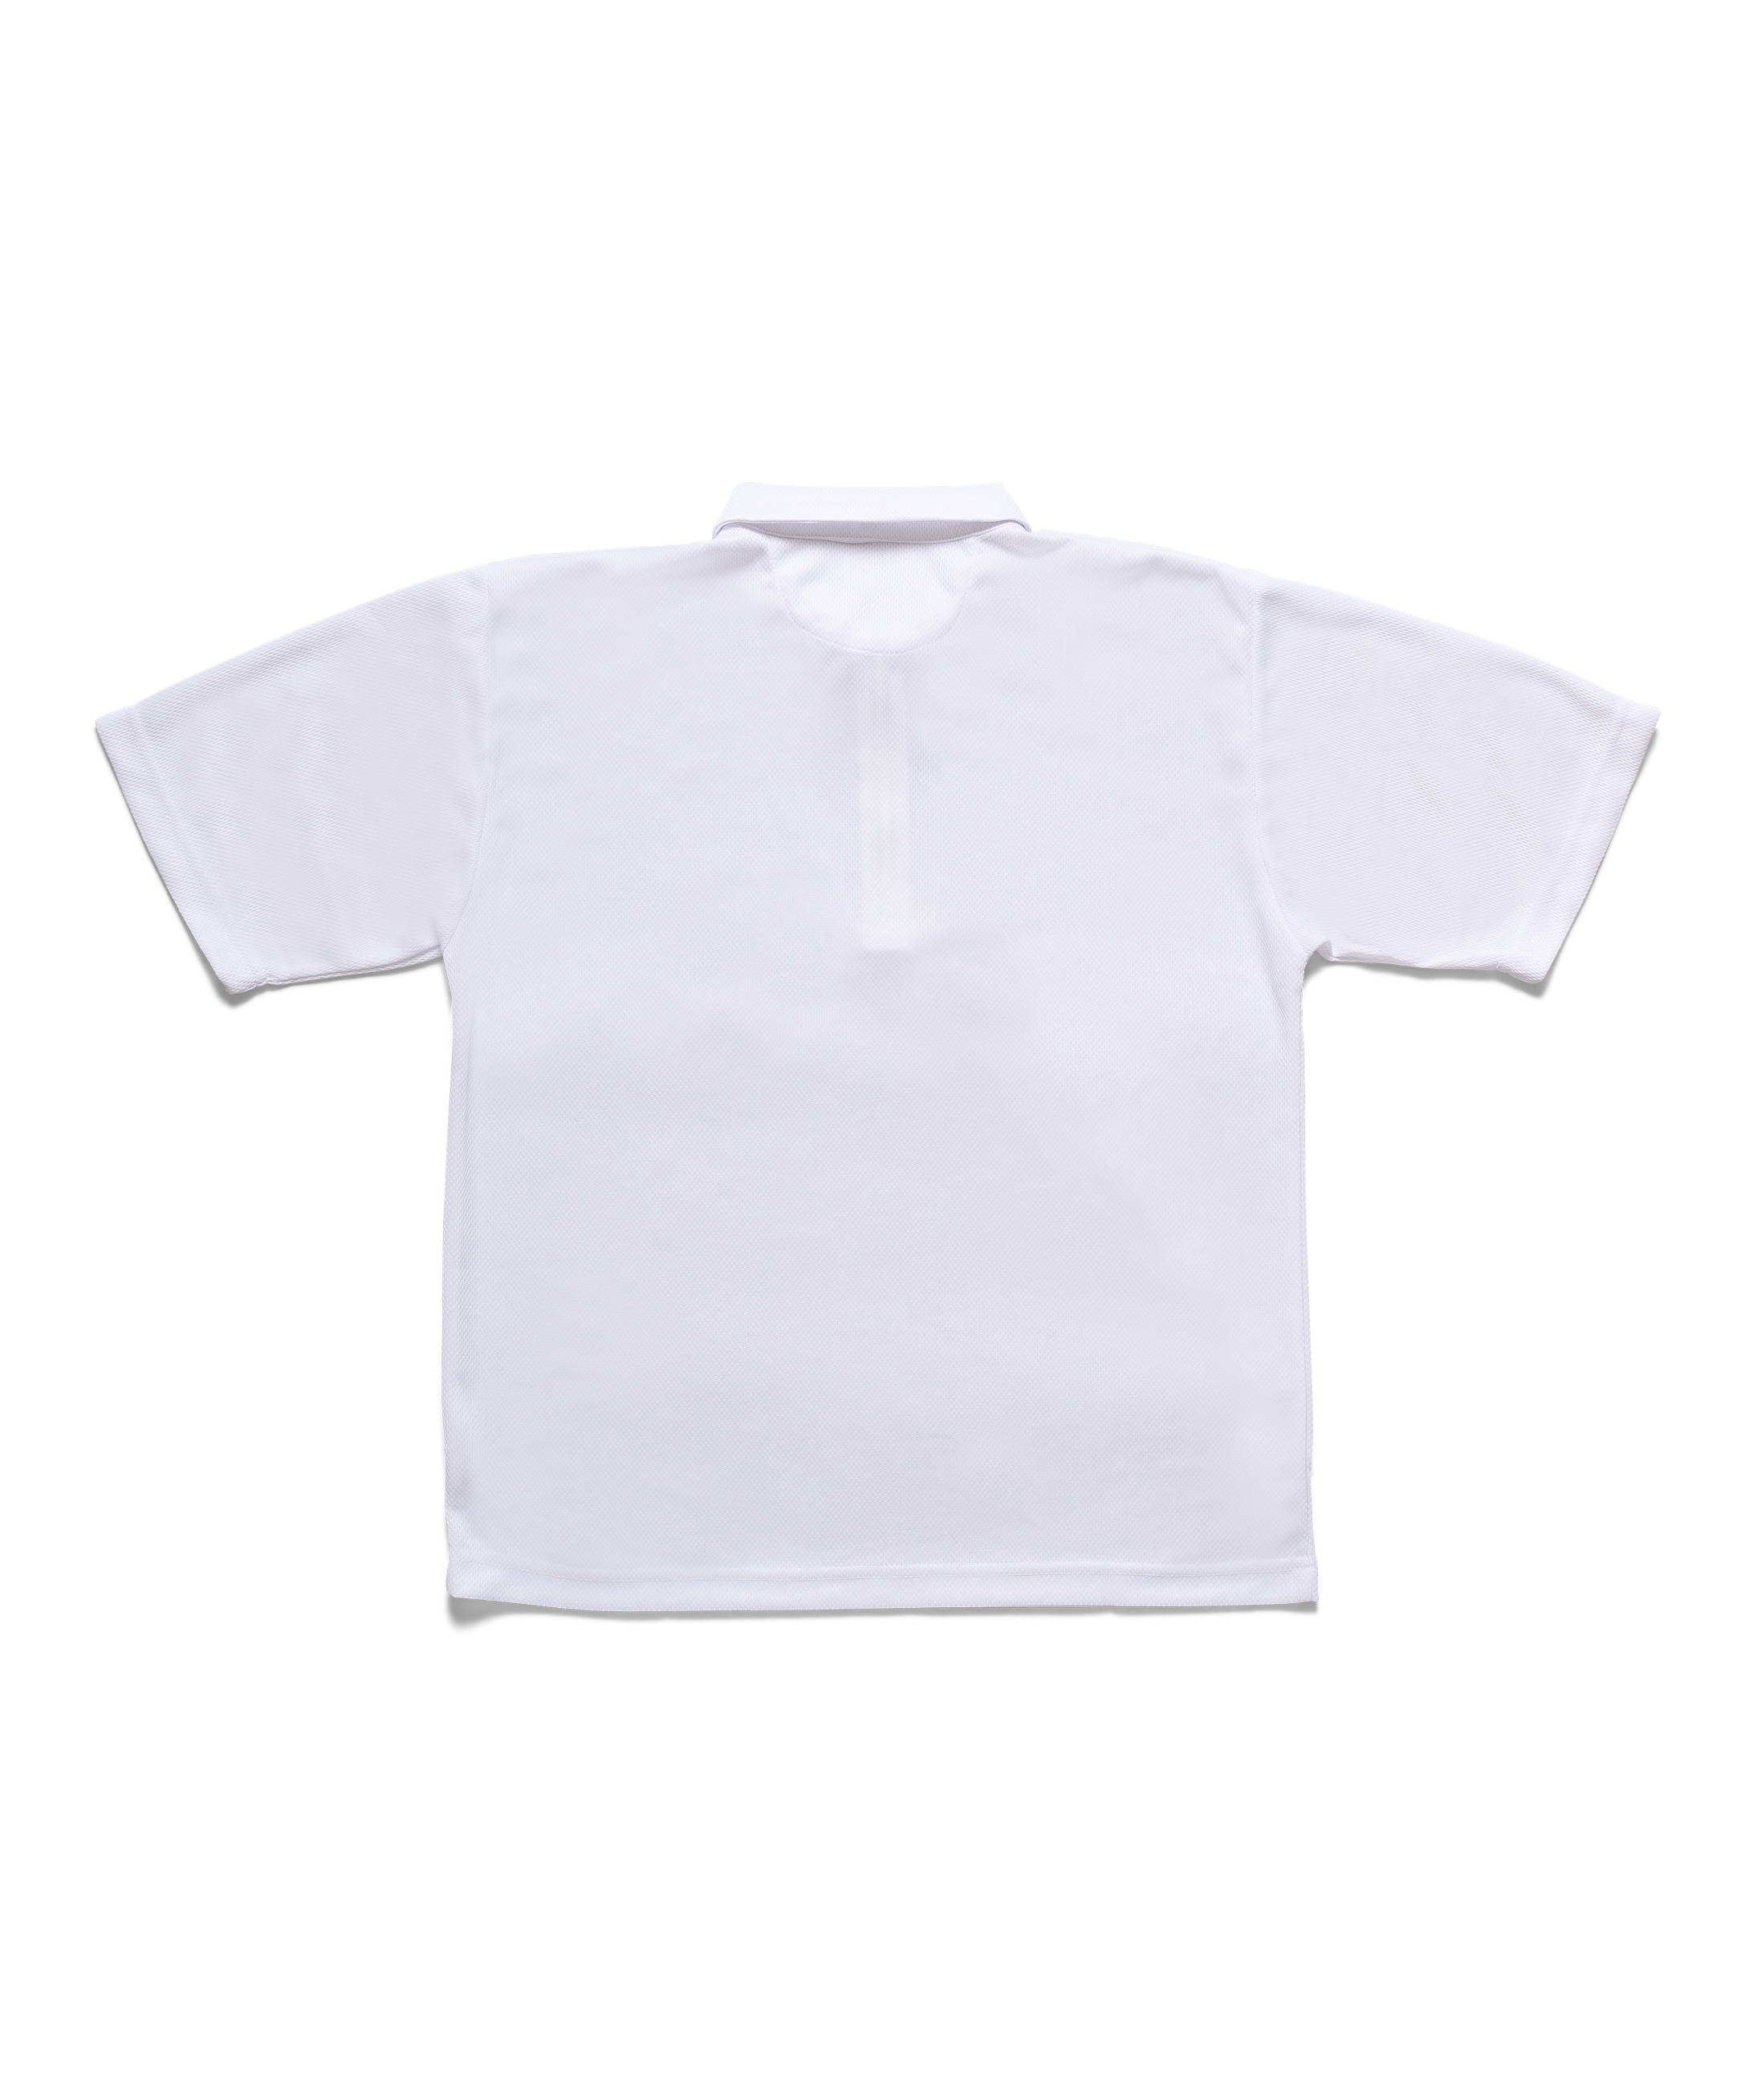 White Pindot Mesh 1/4 Zip Golf Shirt